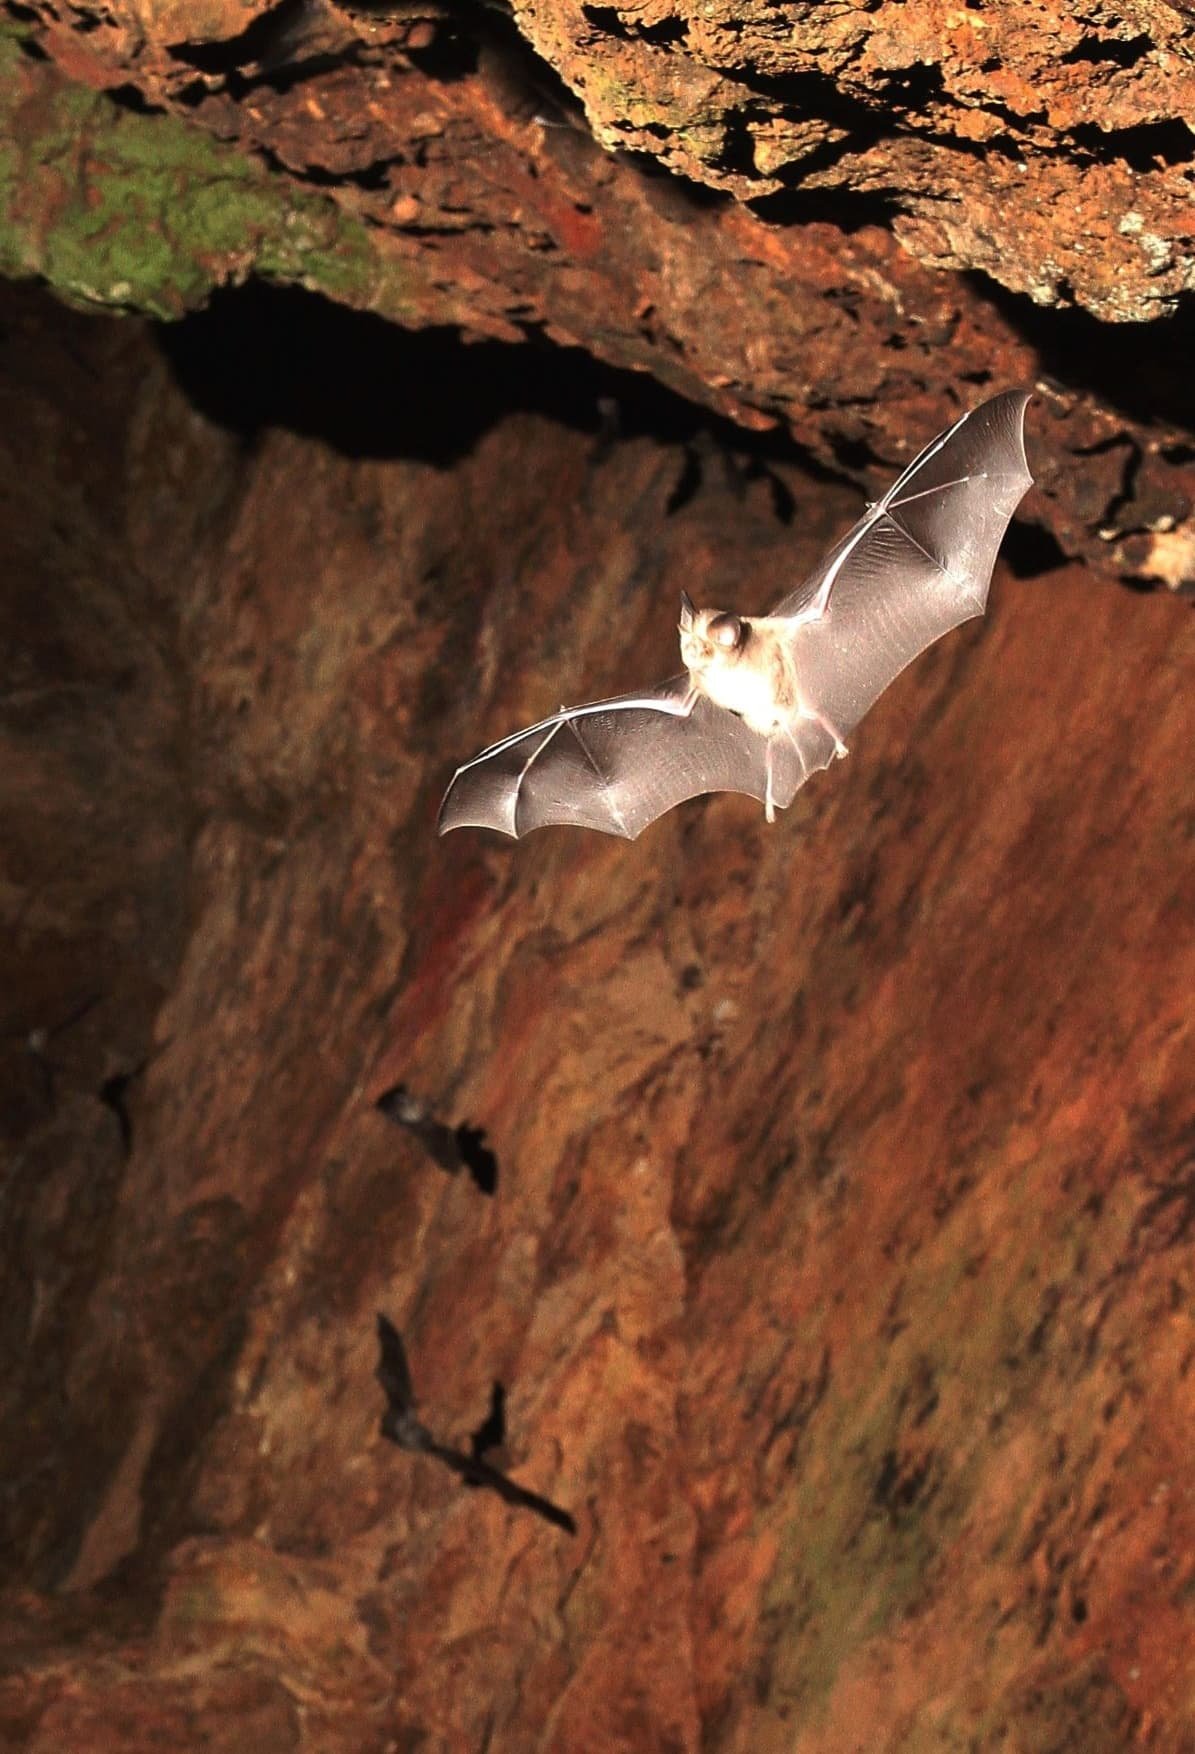 Veľká nočná expedícia za malými netopiermi